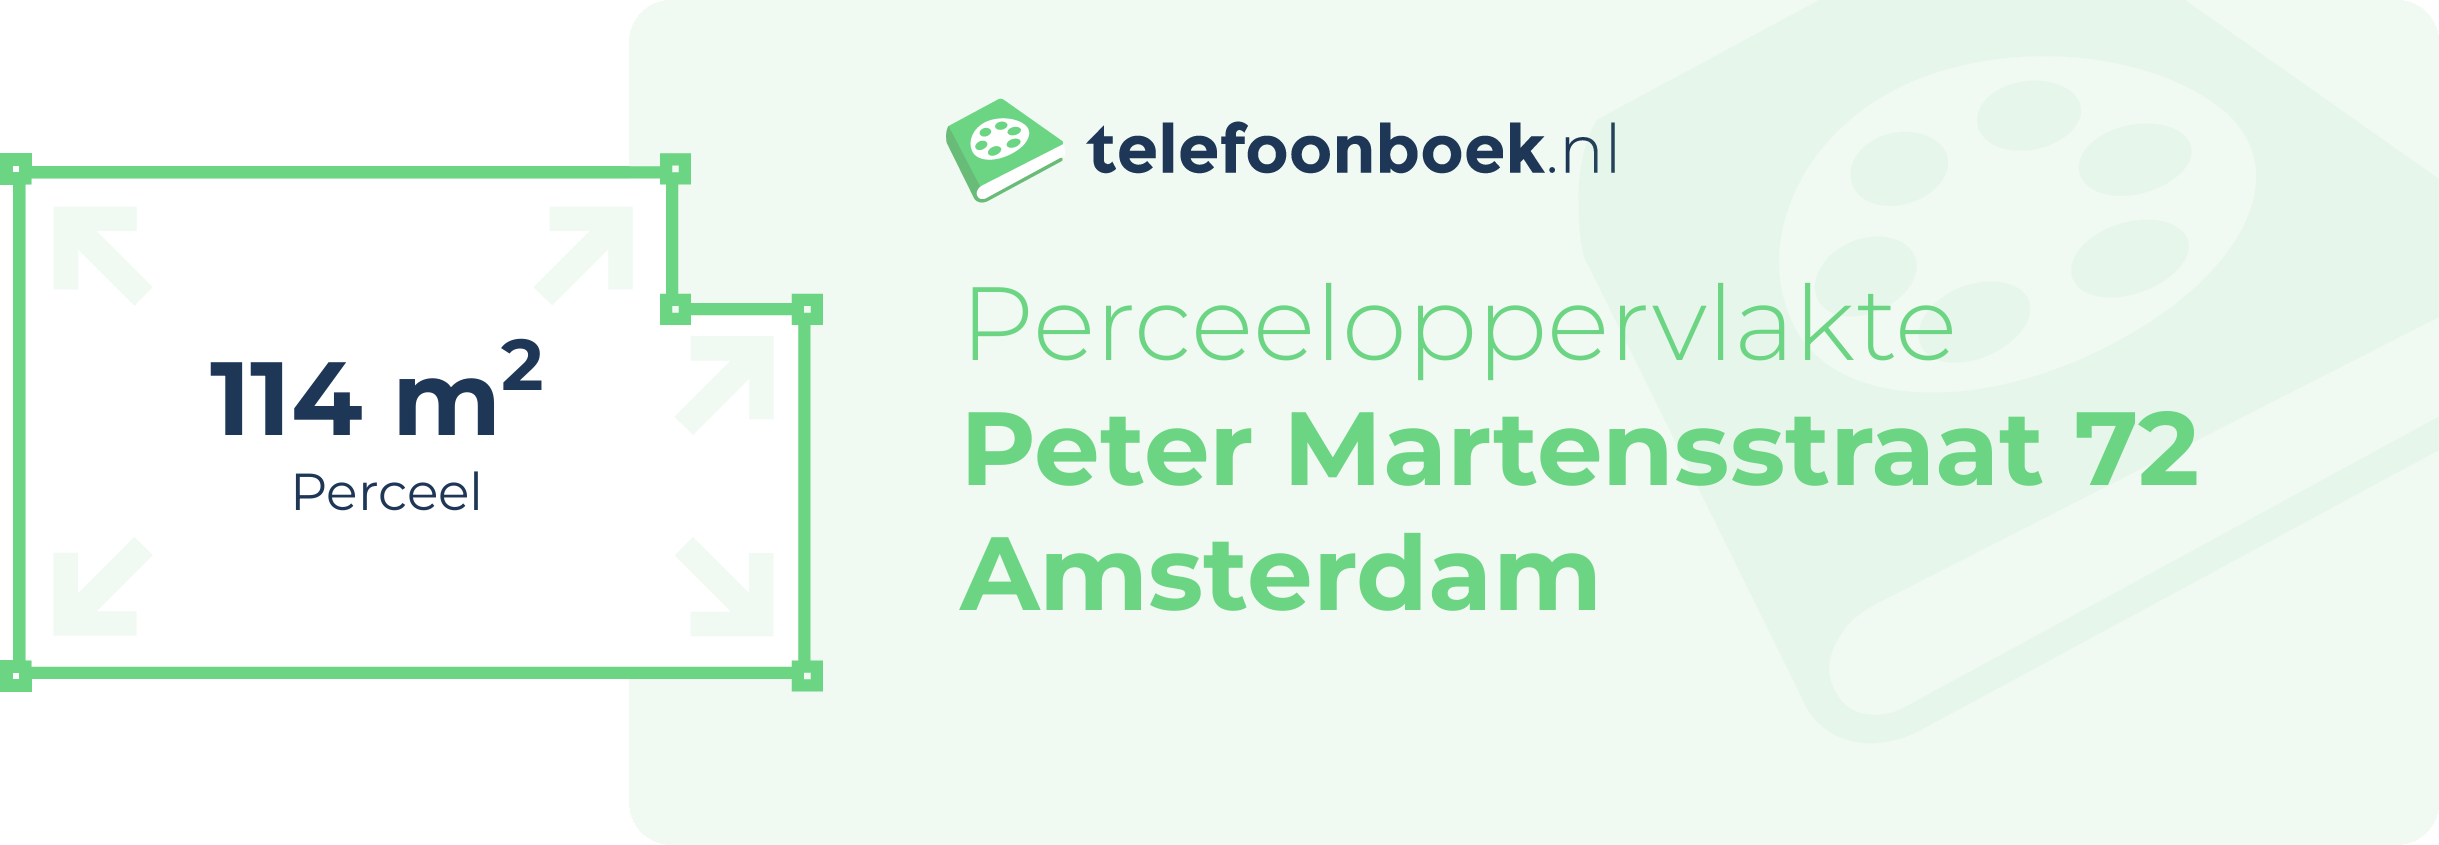 Perceeloppervlakte Peter Martensstraat 72 Amsterdam